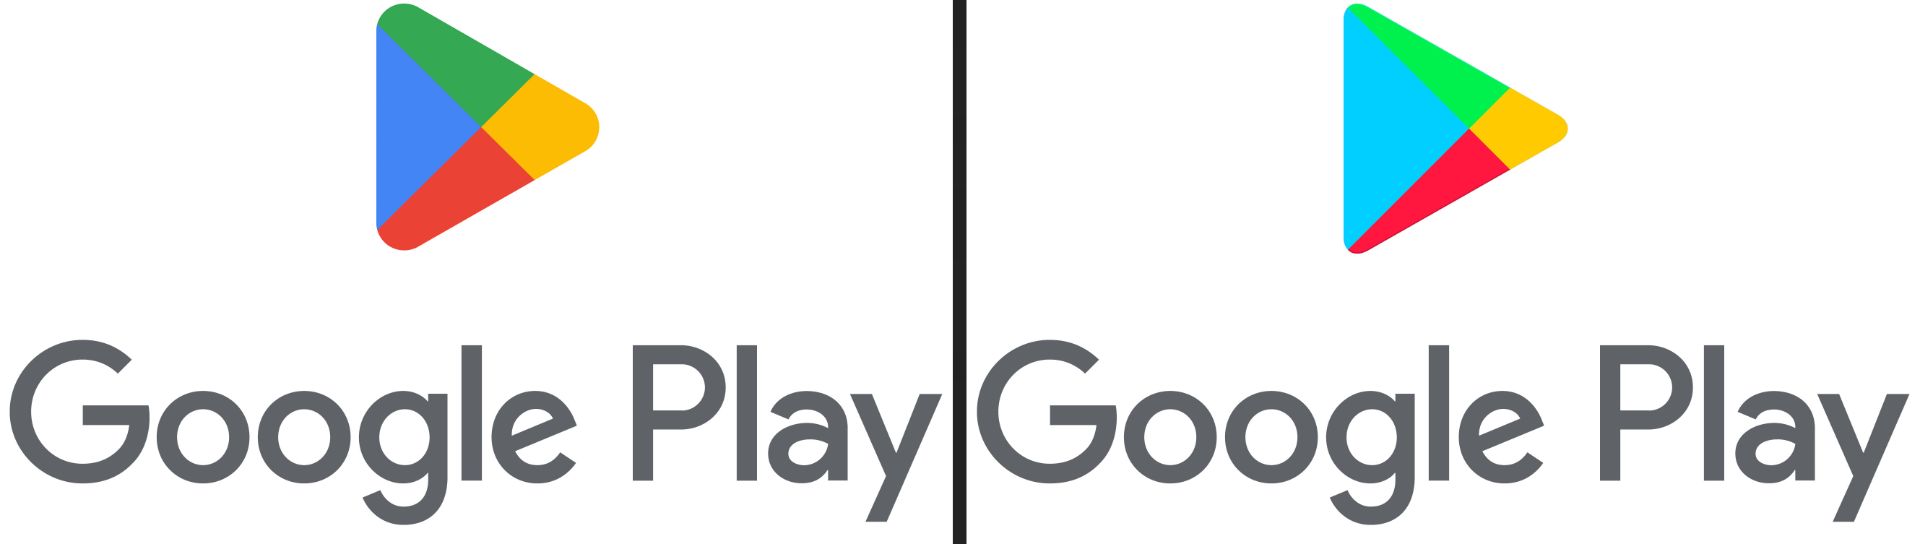 مقایسه لوگو قدیمی گوگل پلی با لوگو جدید Google Play در سال ۲۰۲۲